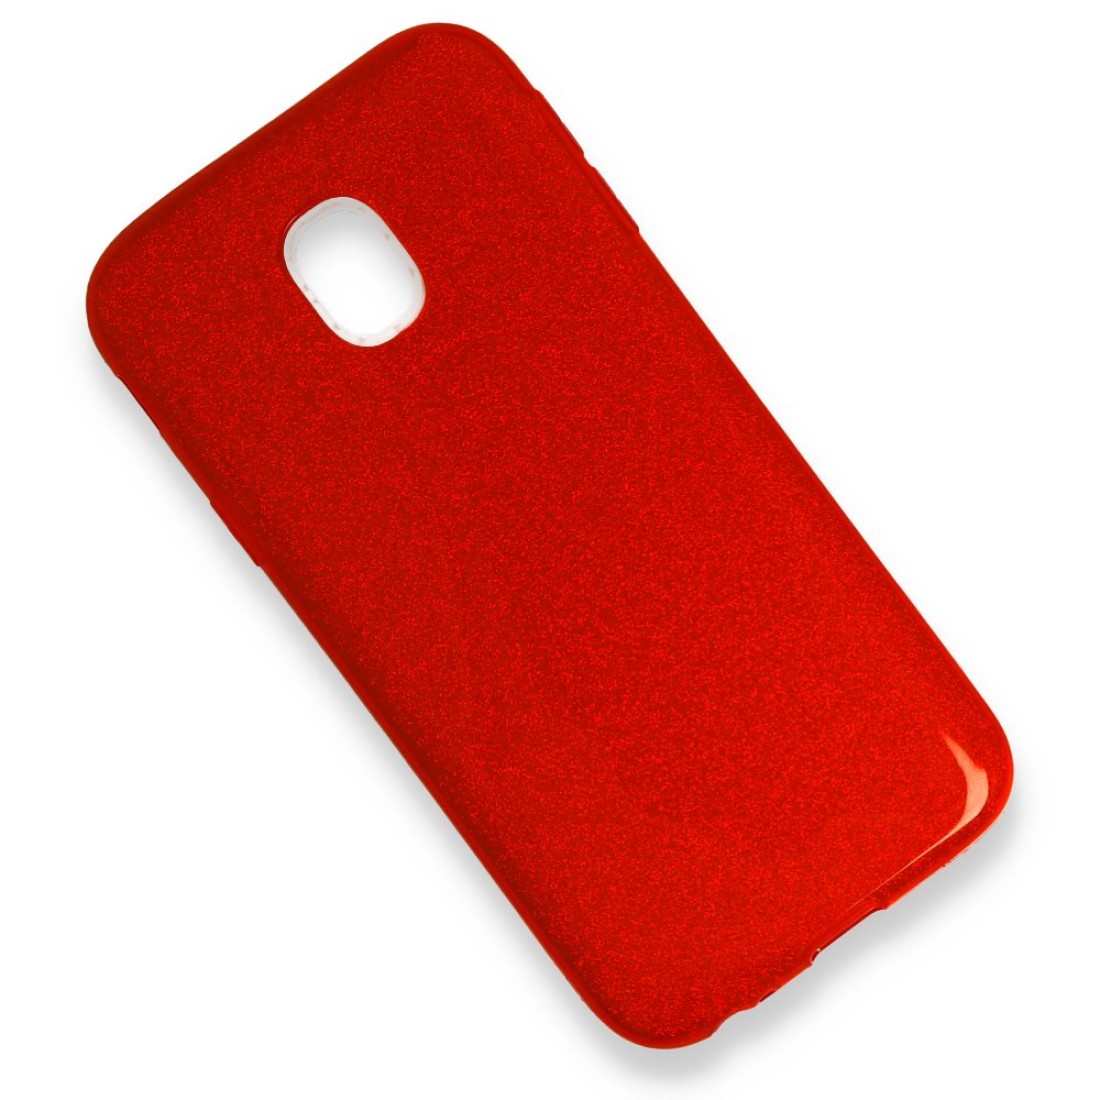 Samsung Galaxy J3 Pro / J330 Kılıf Simli Katmanlı Silikon - Kırmızı